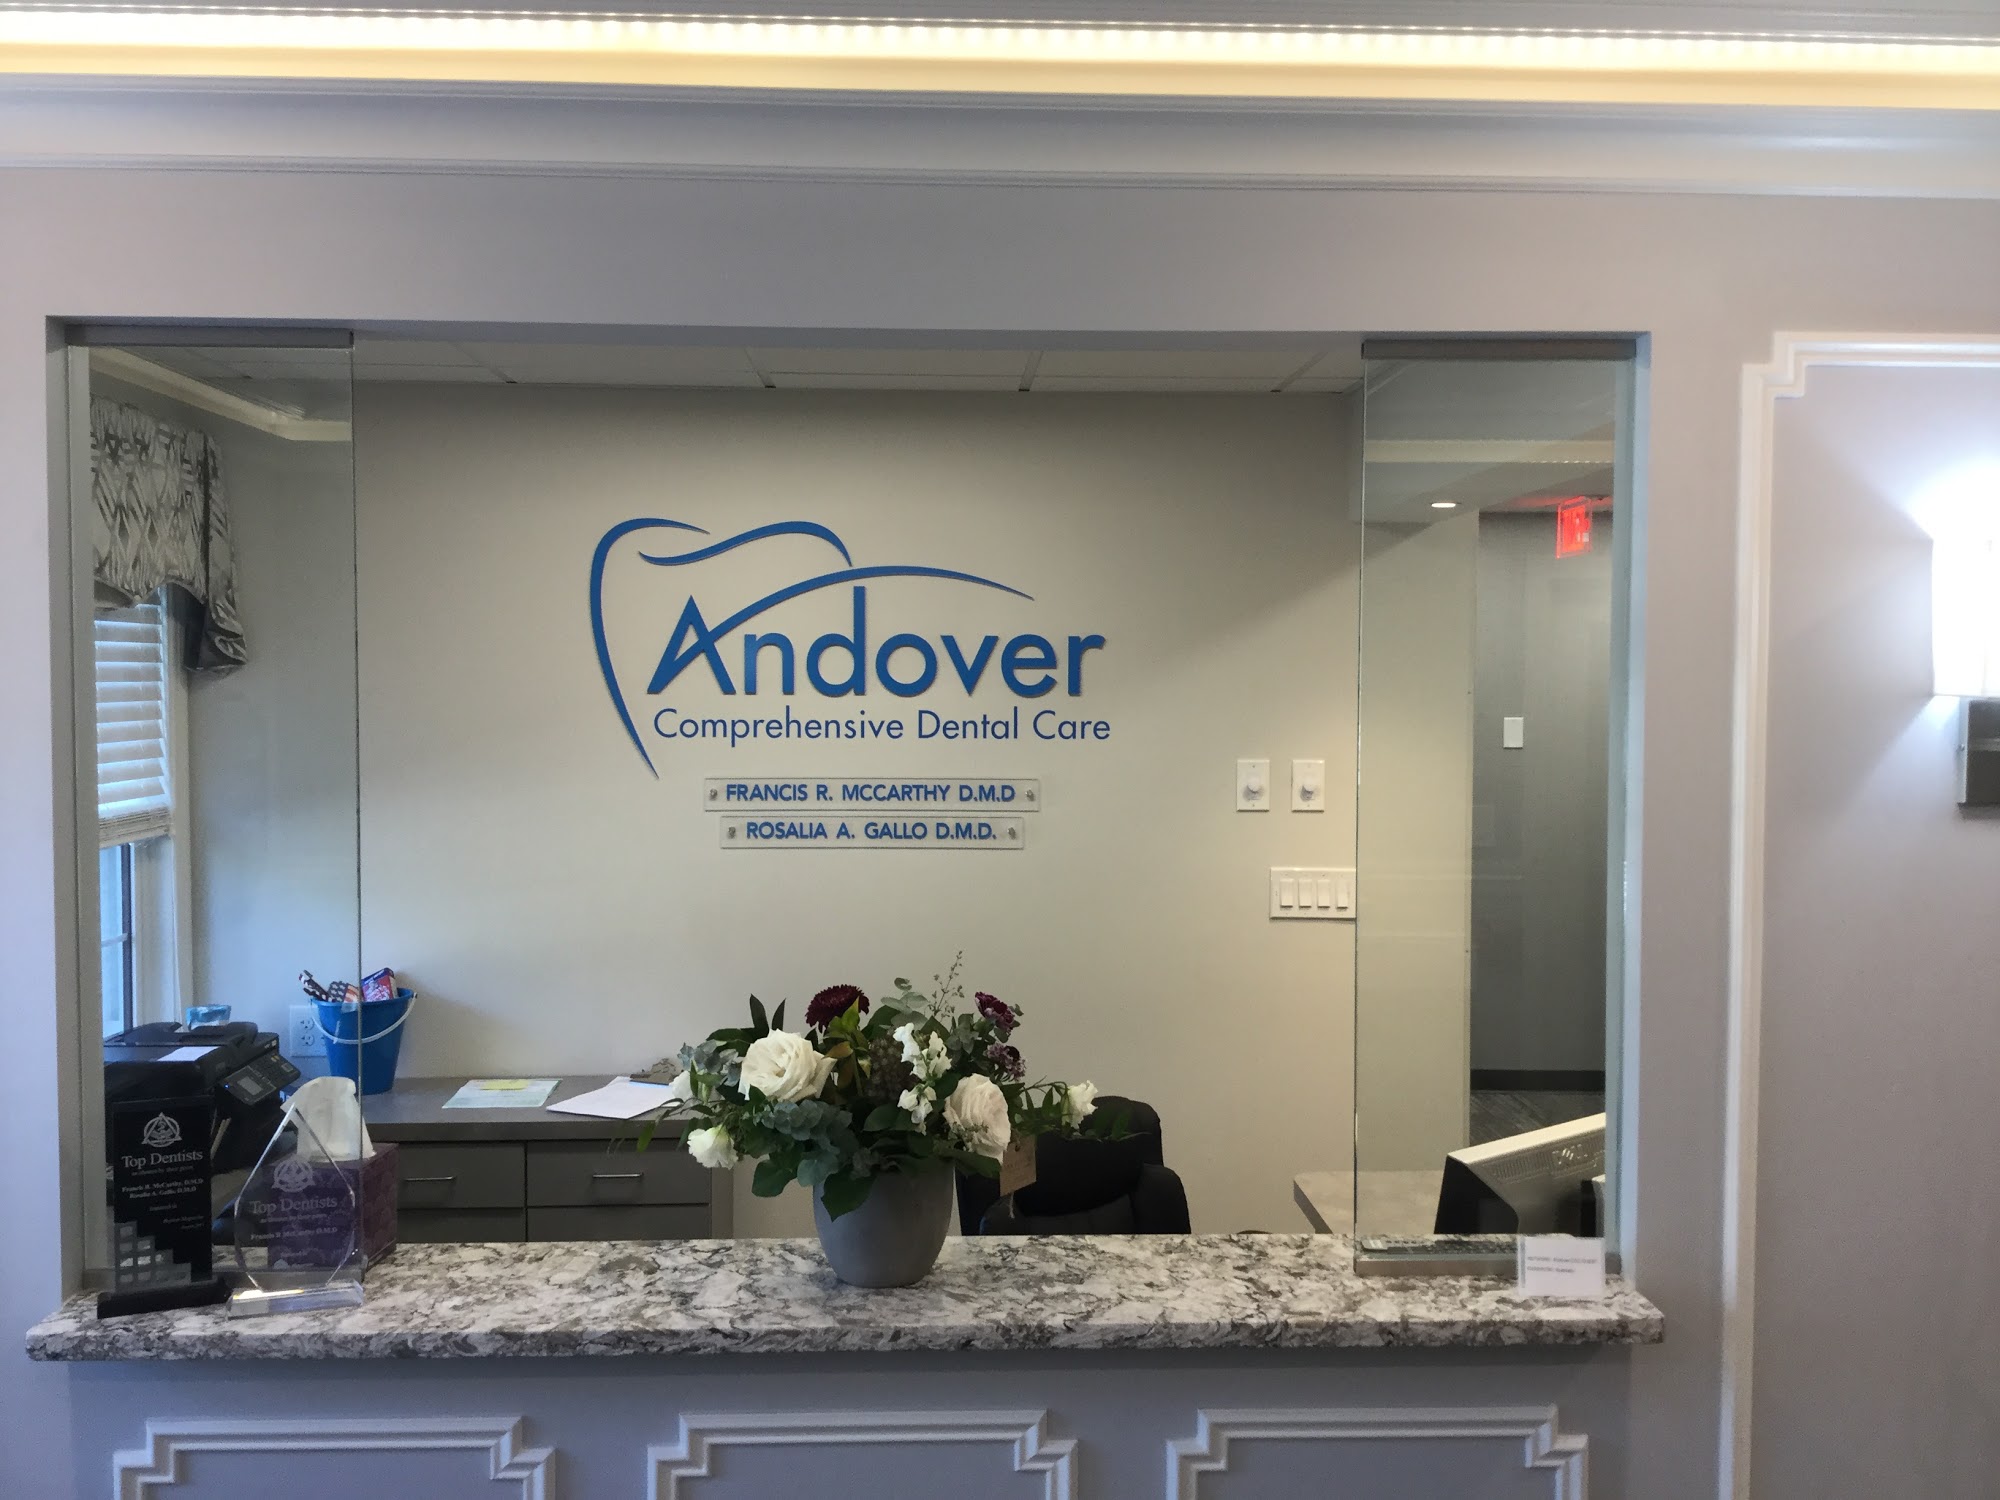 Andover Comprehensive Dental Care